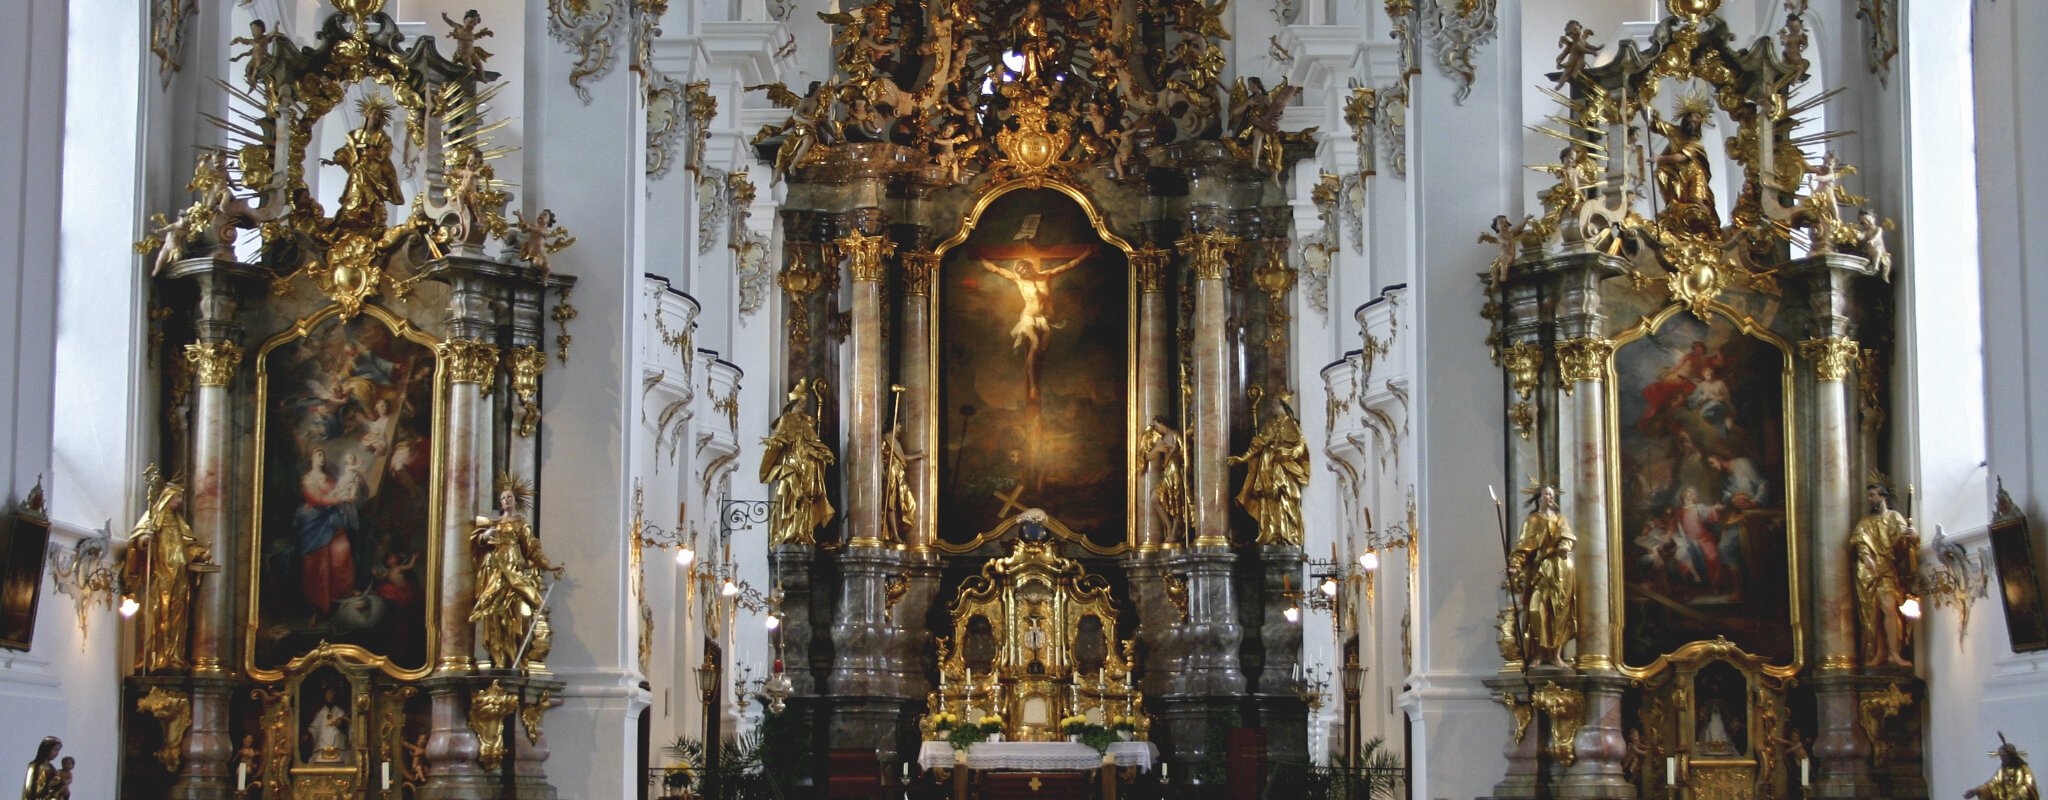 Klosterkirche Heilig Kreuz - Innenansicht